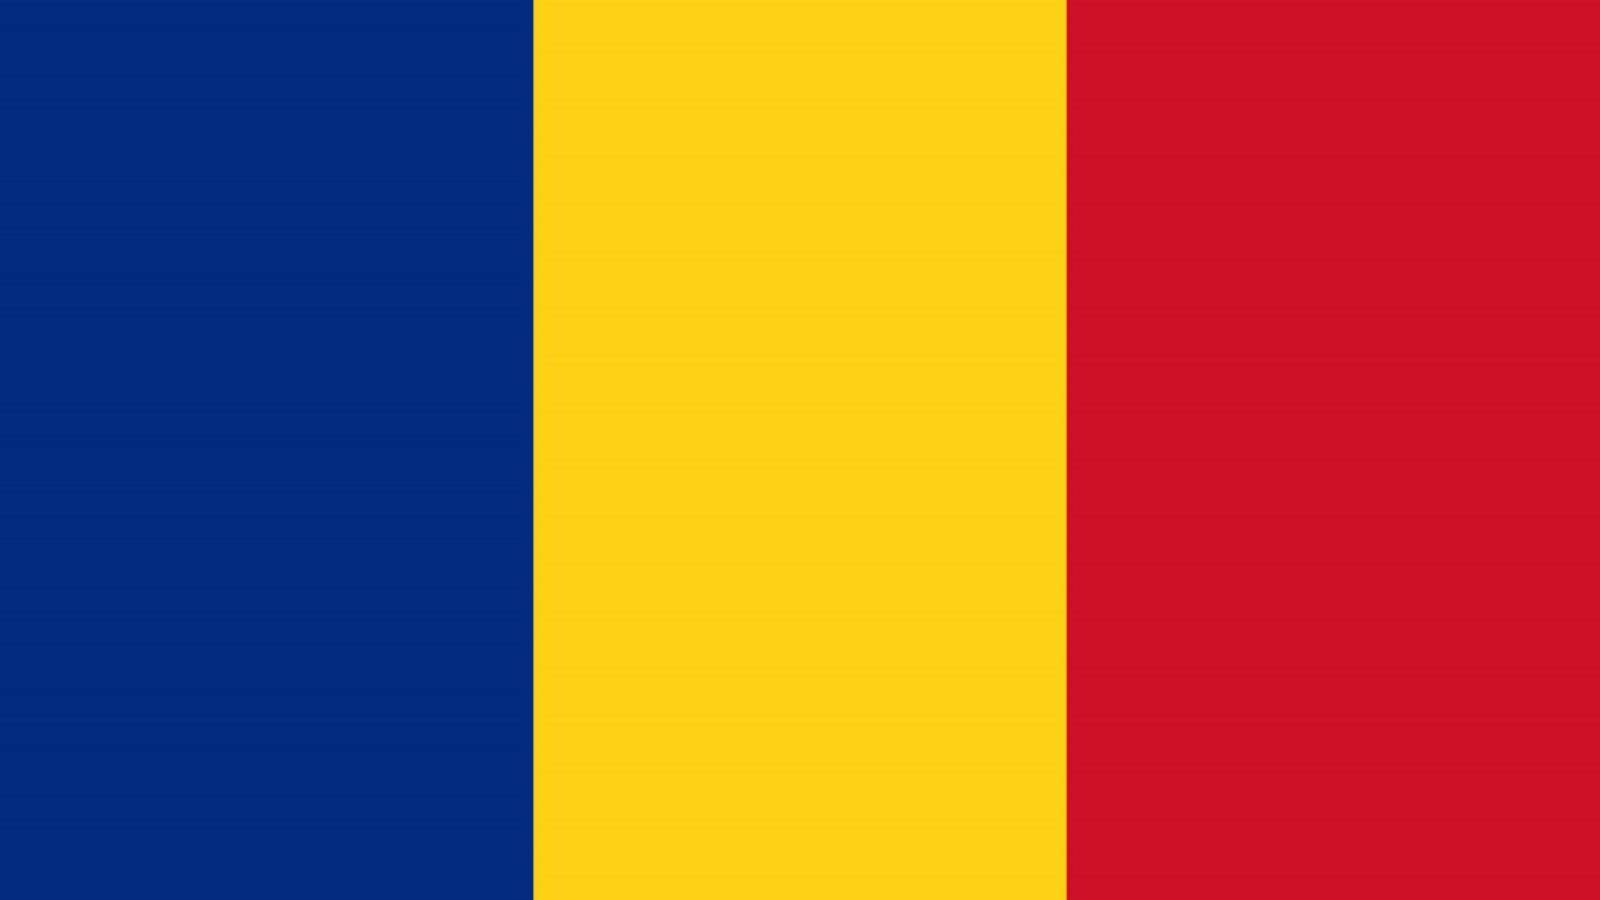 Rumänien: Alarmierendes Problem, dringende Beschränkungen